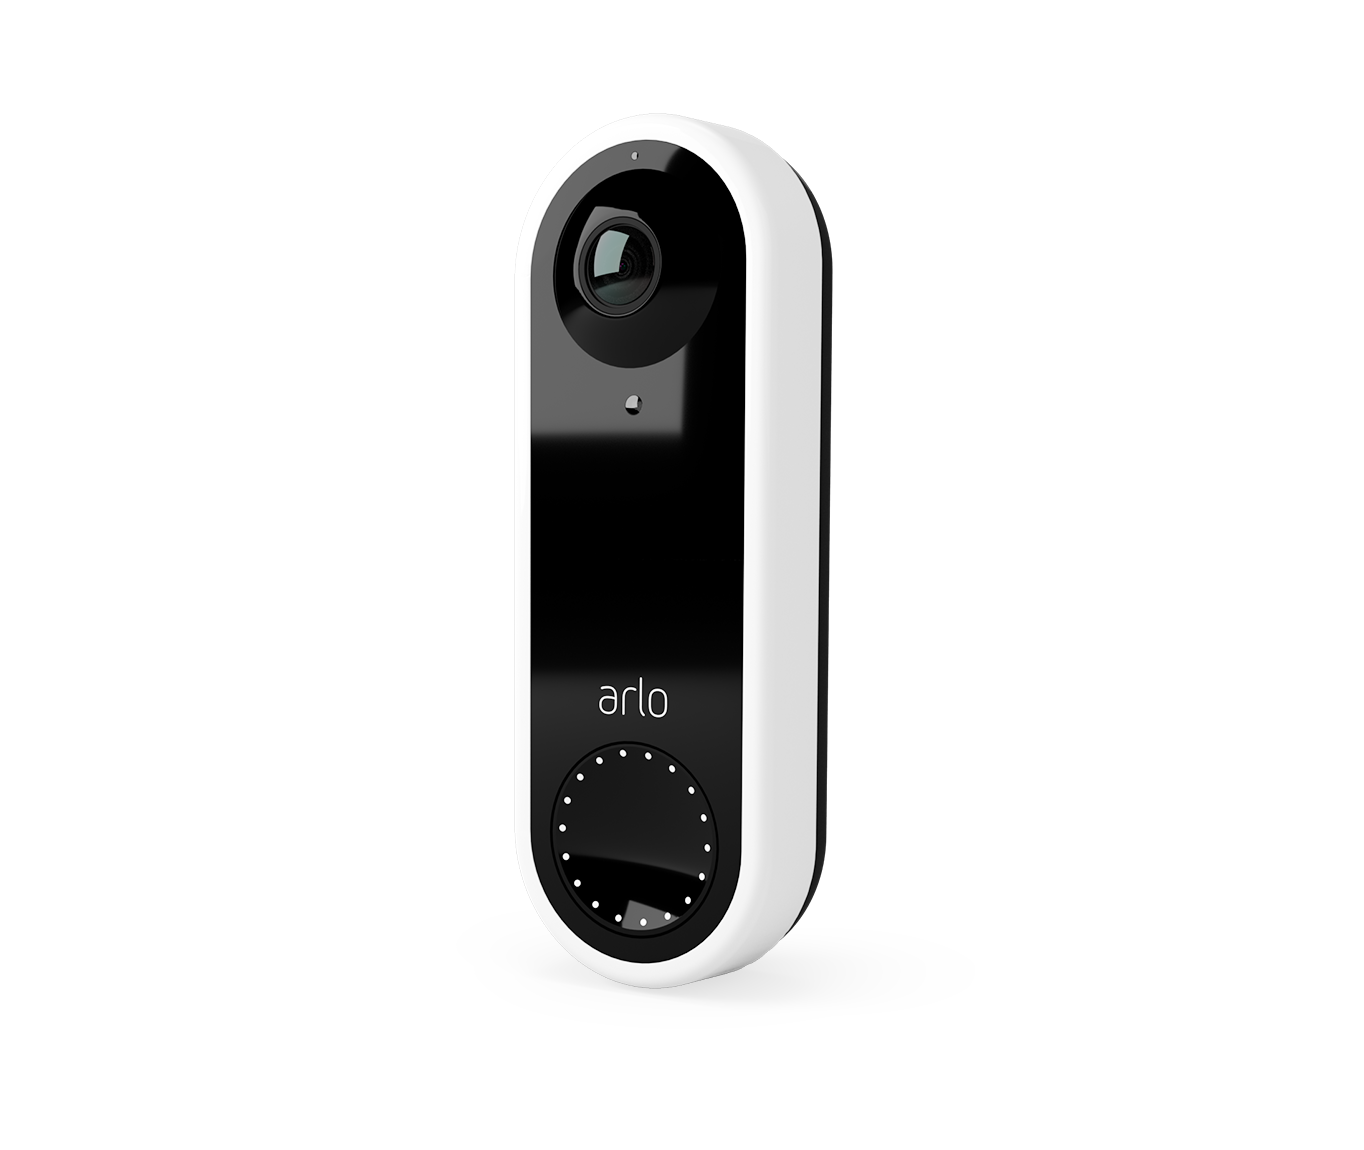 A white Arlo Doorbell camera